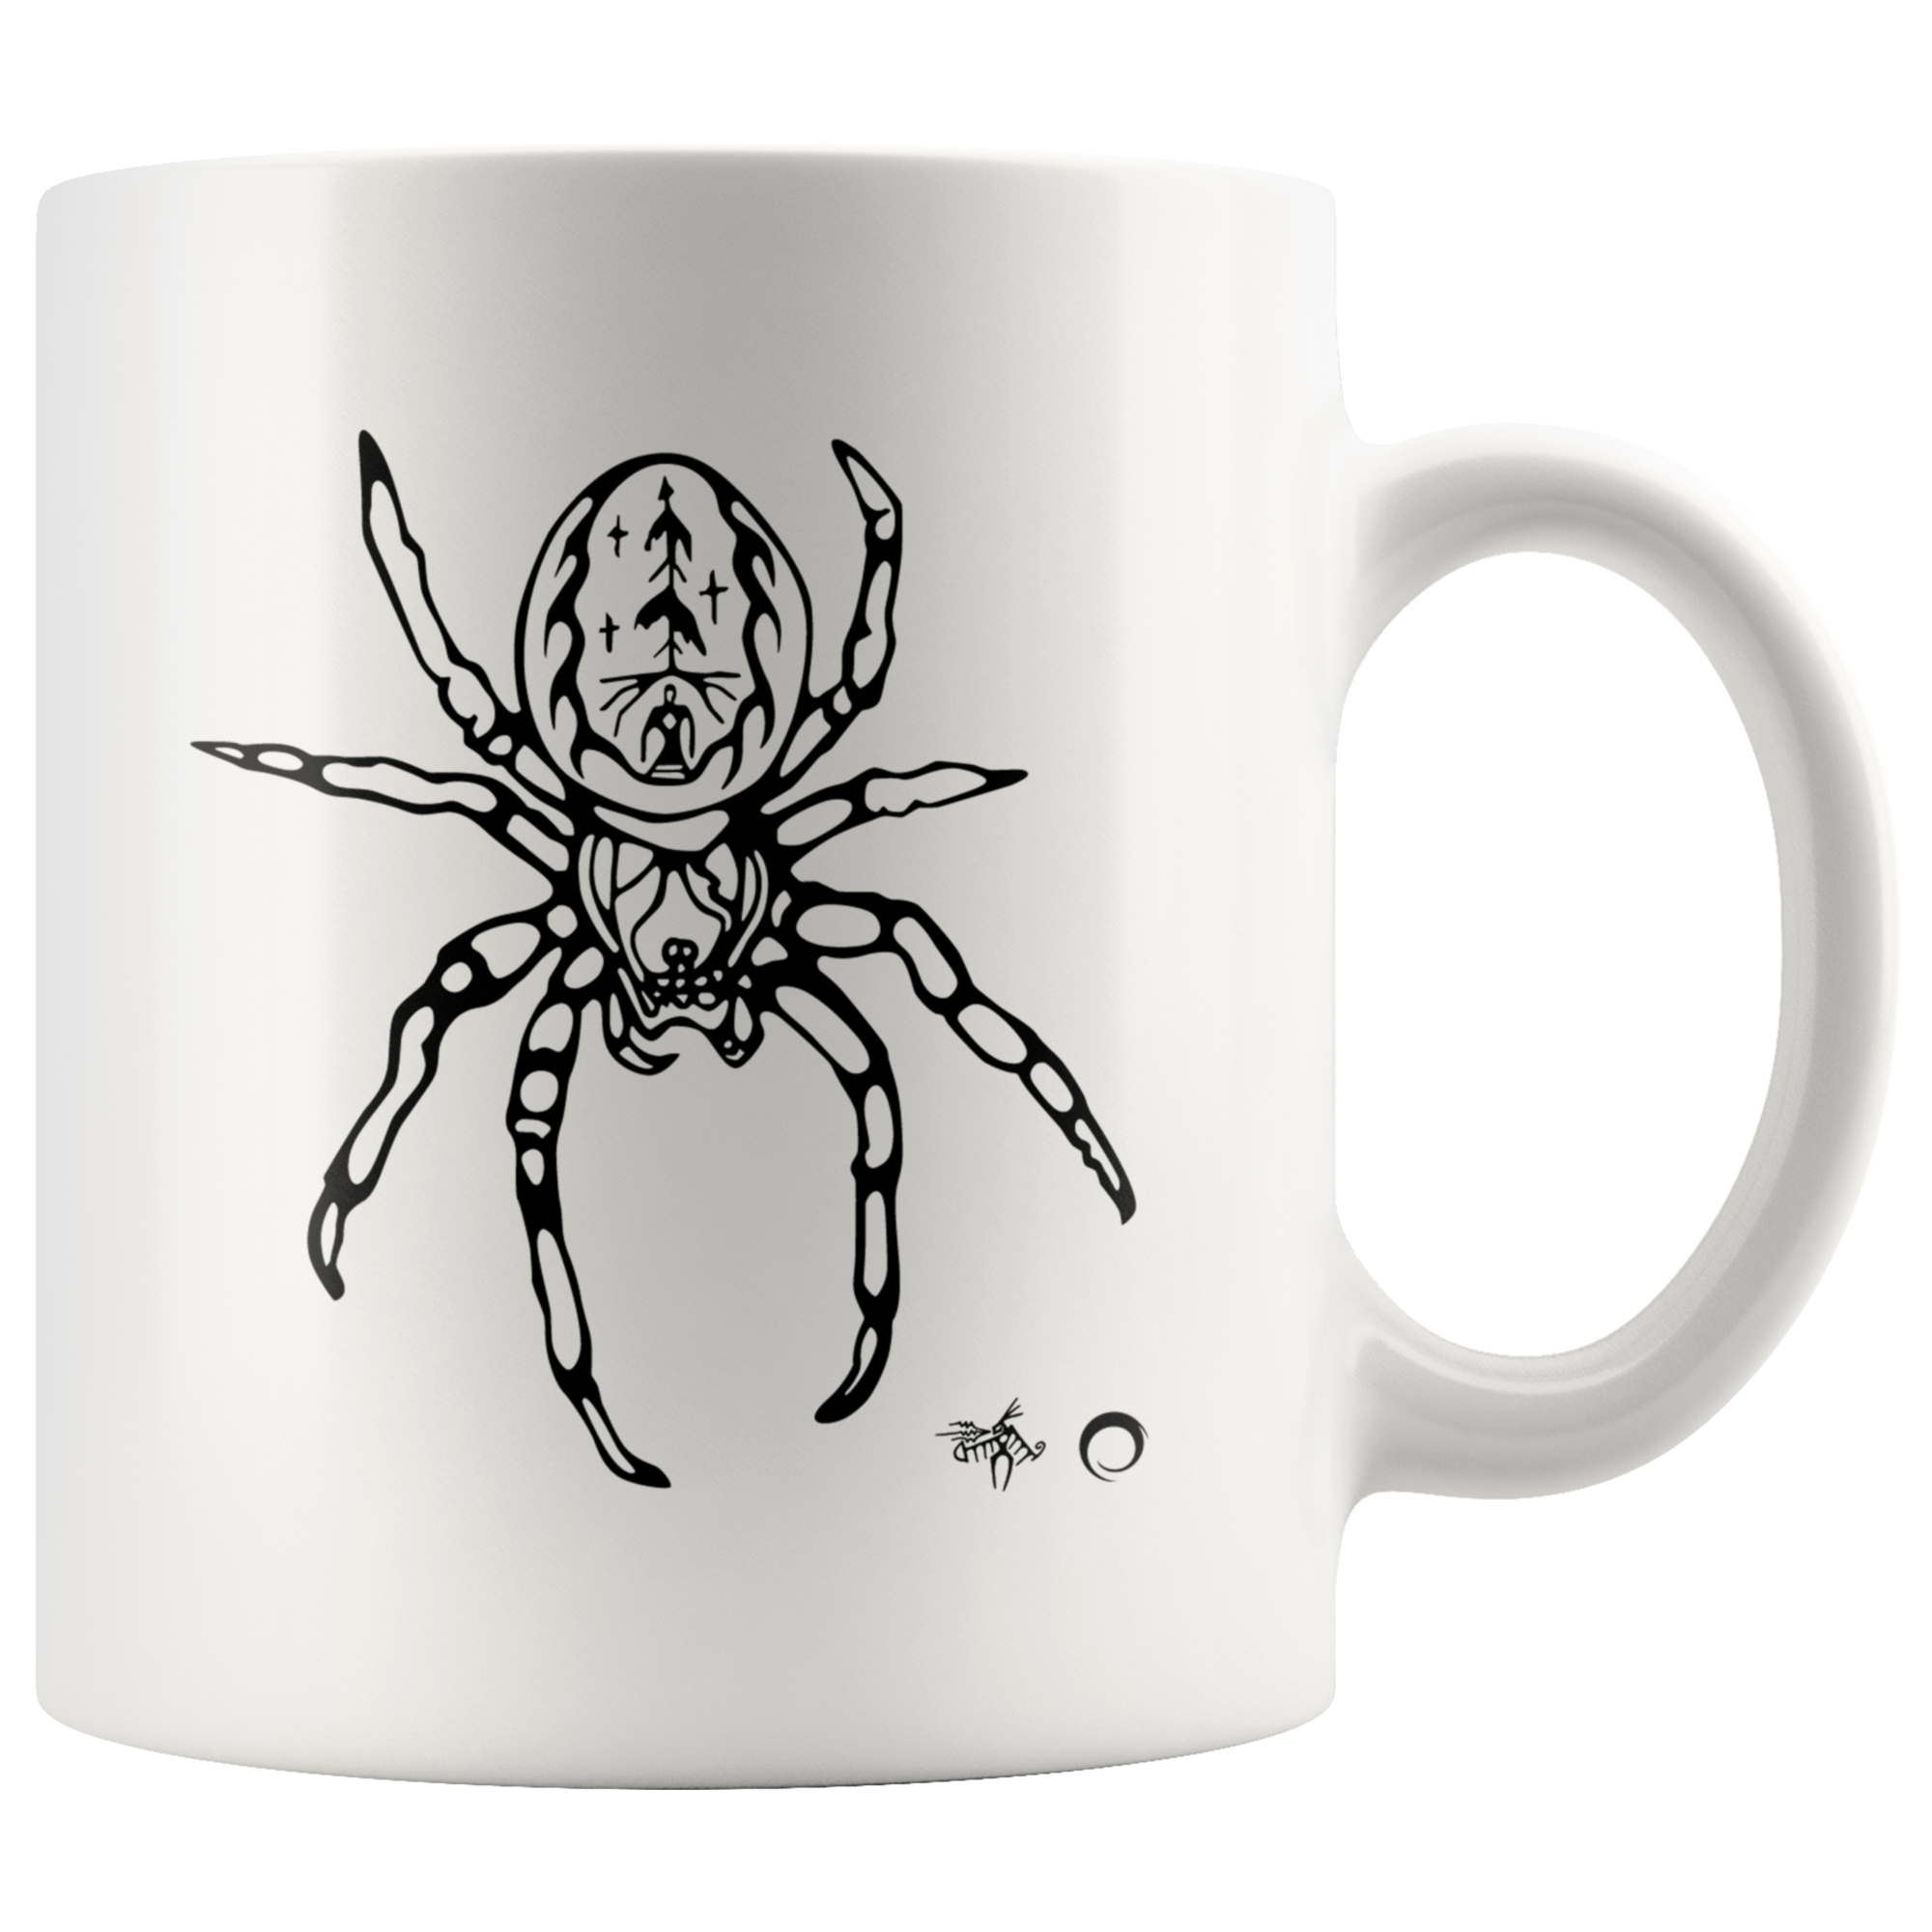 Spider Mug by Miigizi